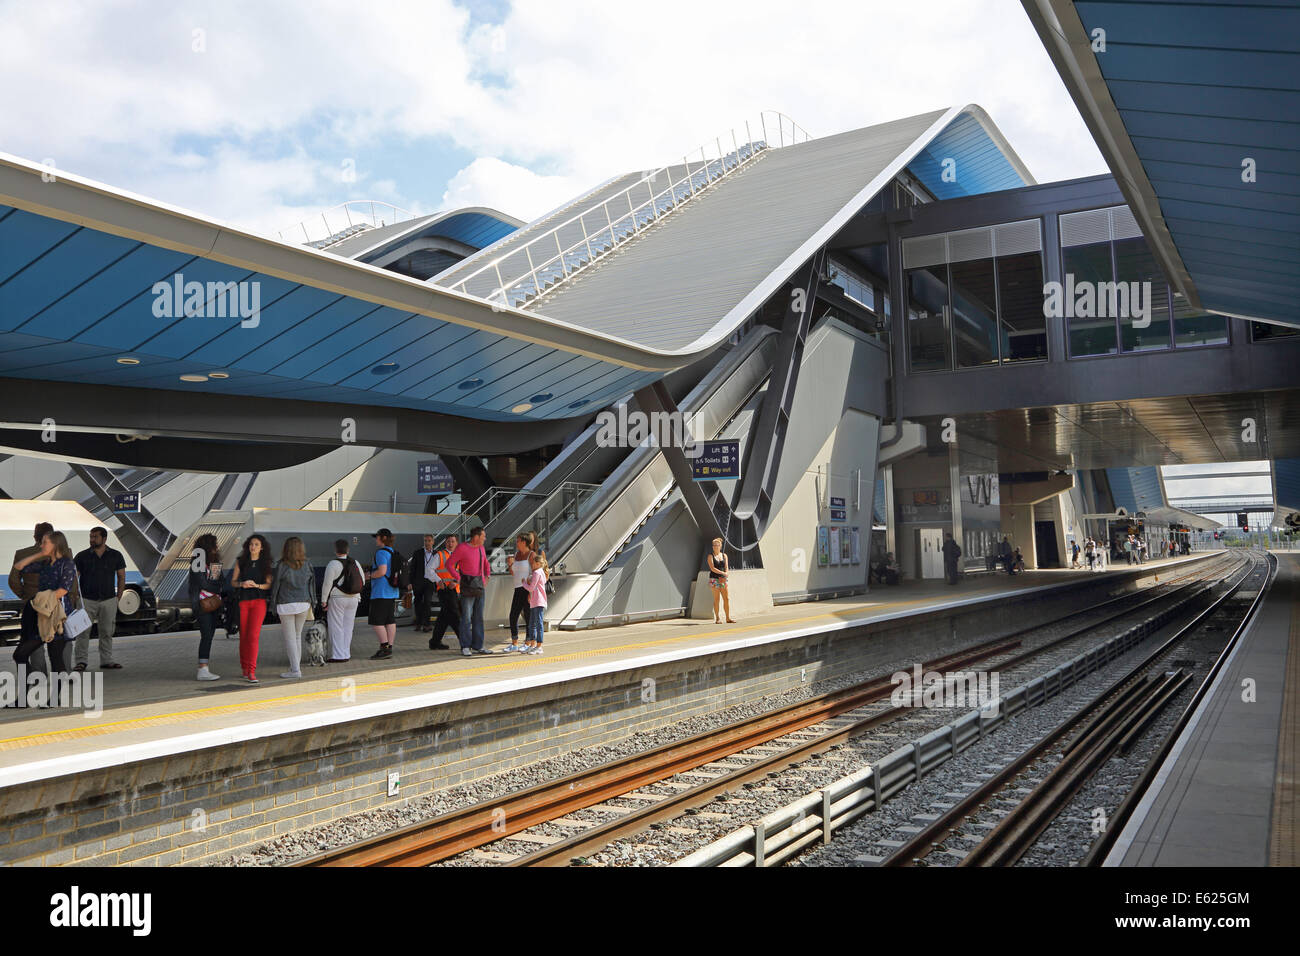 La gare de Reading indiquant le nouveau pont de auvents et ouvert en 2013. Montre les passagers qui attendent sur la plate-forme 10 Banque D'Images